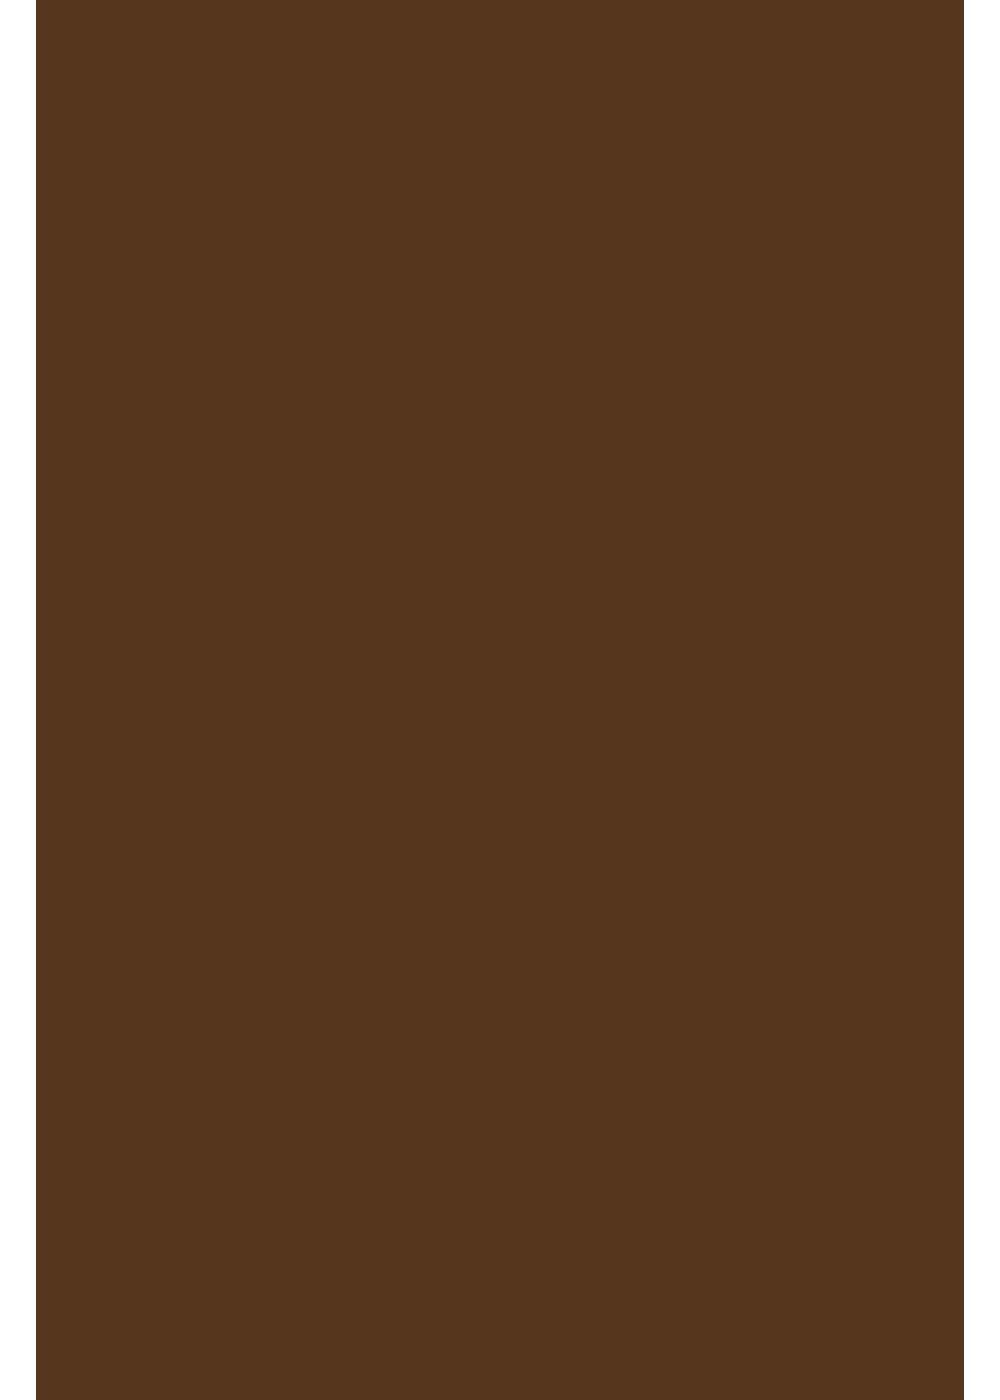 Hilltop Transparentpapier A4 Transferfolie/Textilfolie zum Aufbügeln - perfekt zum Plottern Chocolate